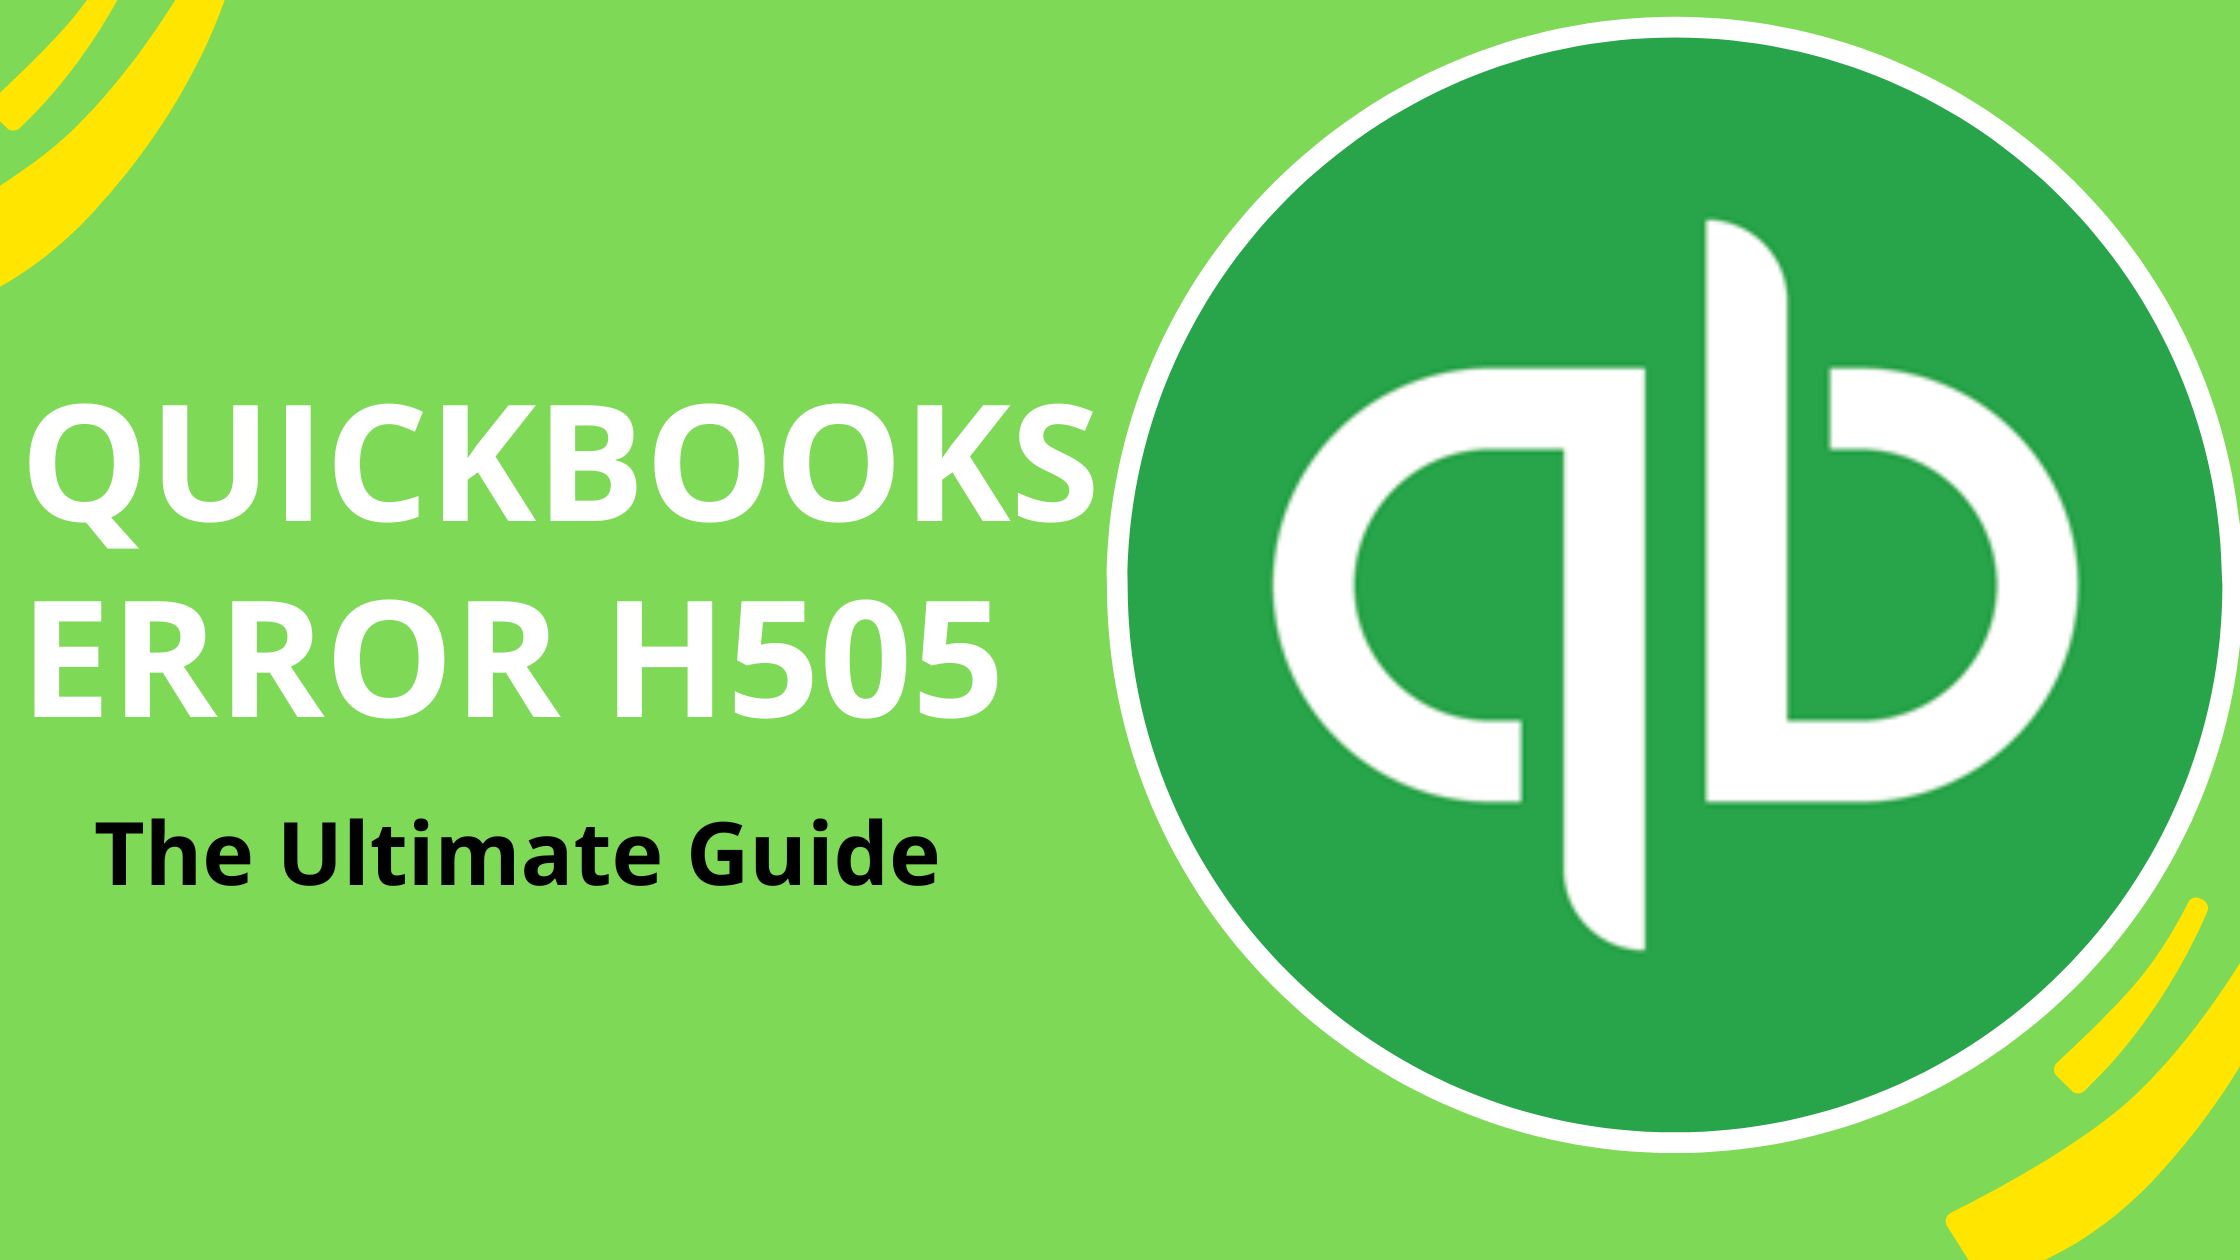 QuickBooks Error H505